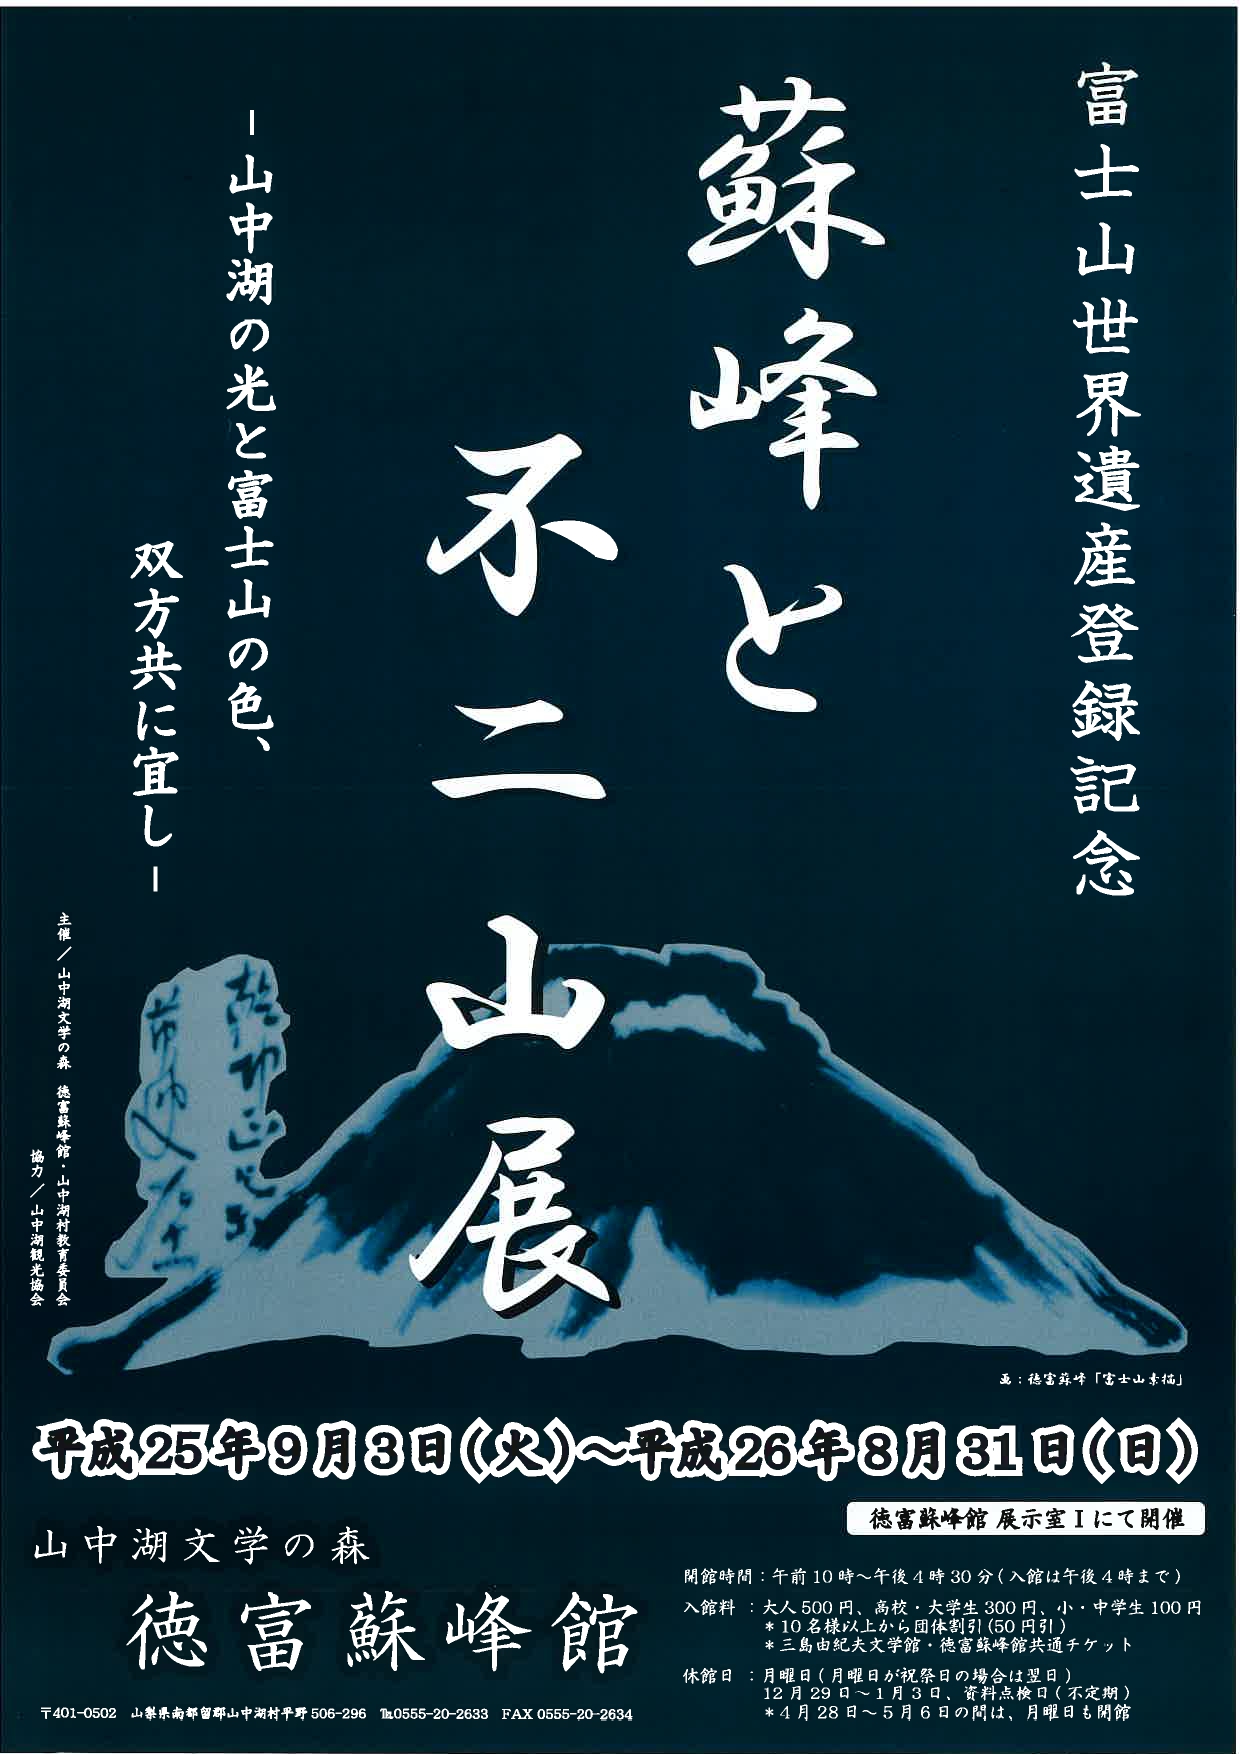 富士山世界遺産登録記念「蘇峰と不二山展」